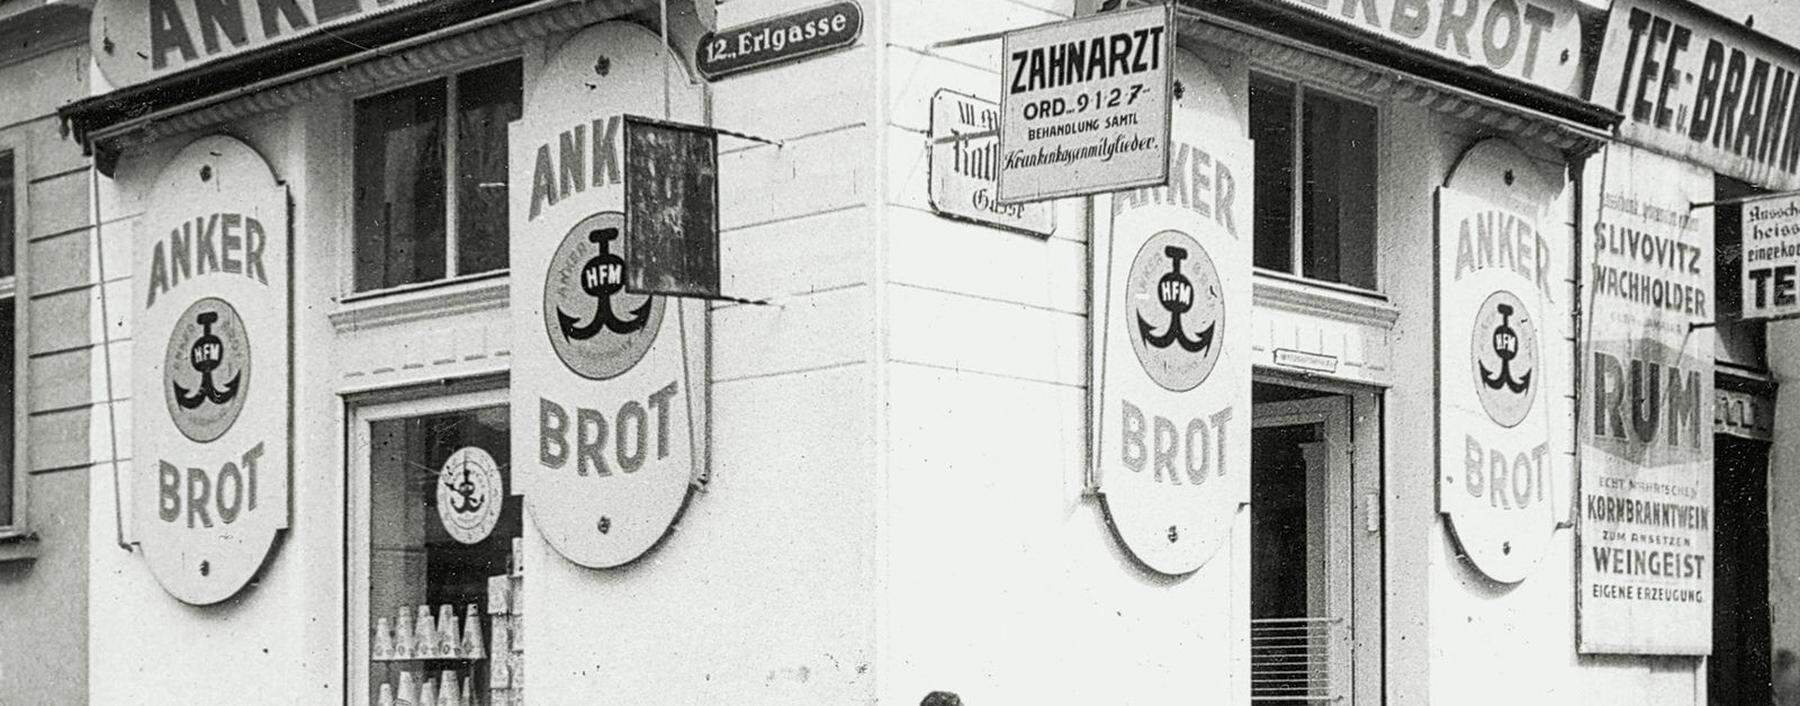 Eine Ankerbrot-Filiale in Meidling um 1935/1940. Das Anker-Symbol blieb bis in die 1980er-Jahre das Markenzeichen des Betriebs.